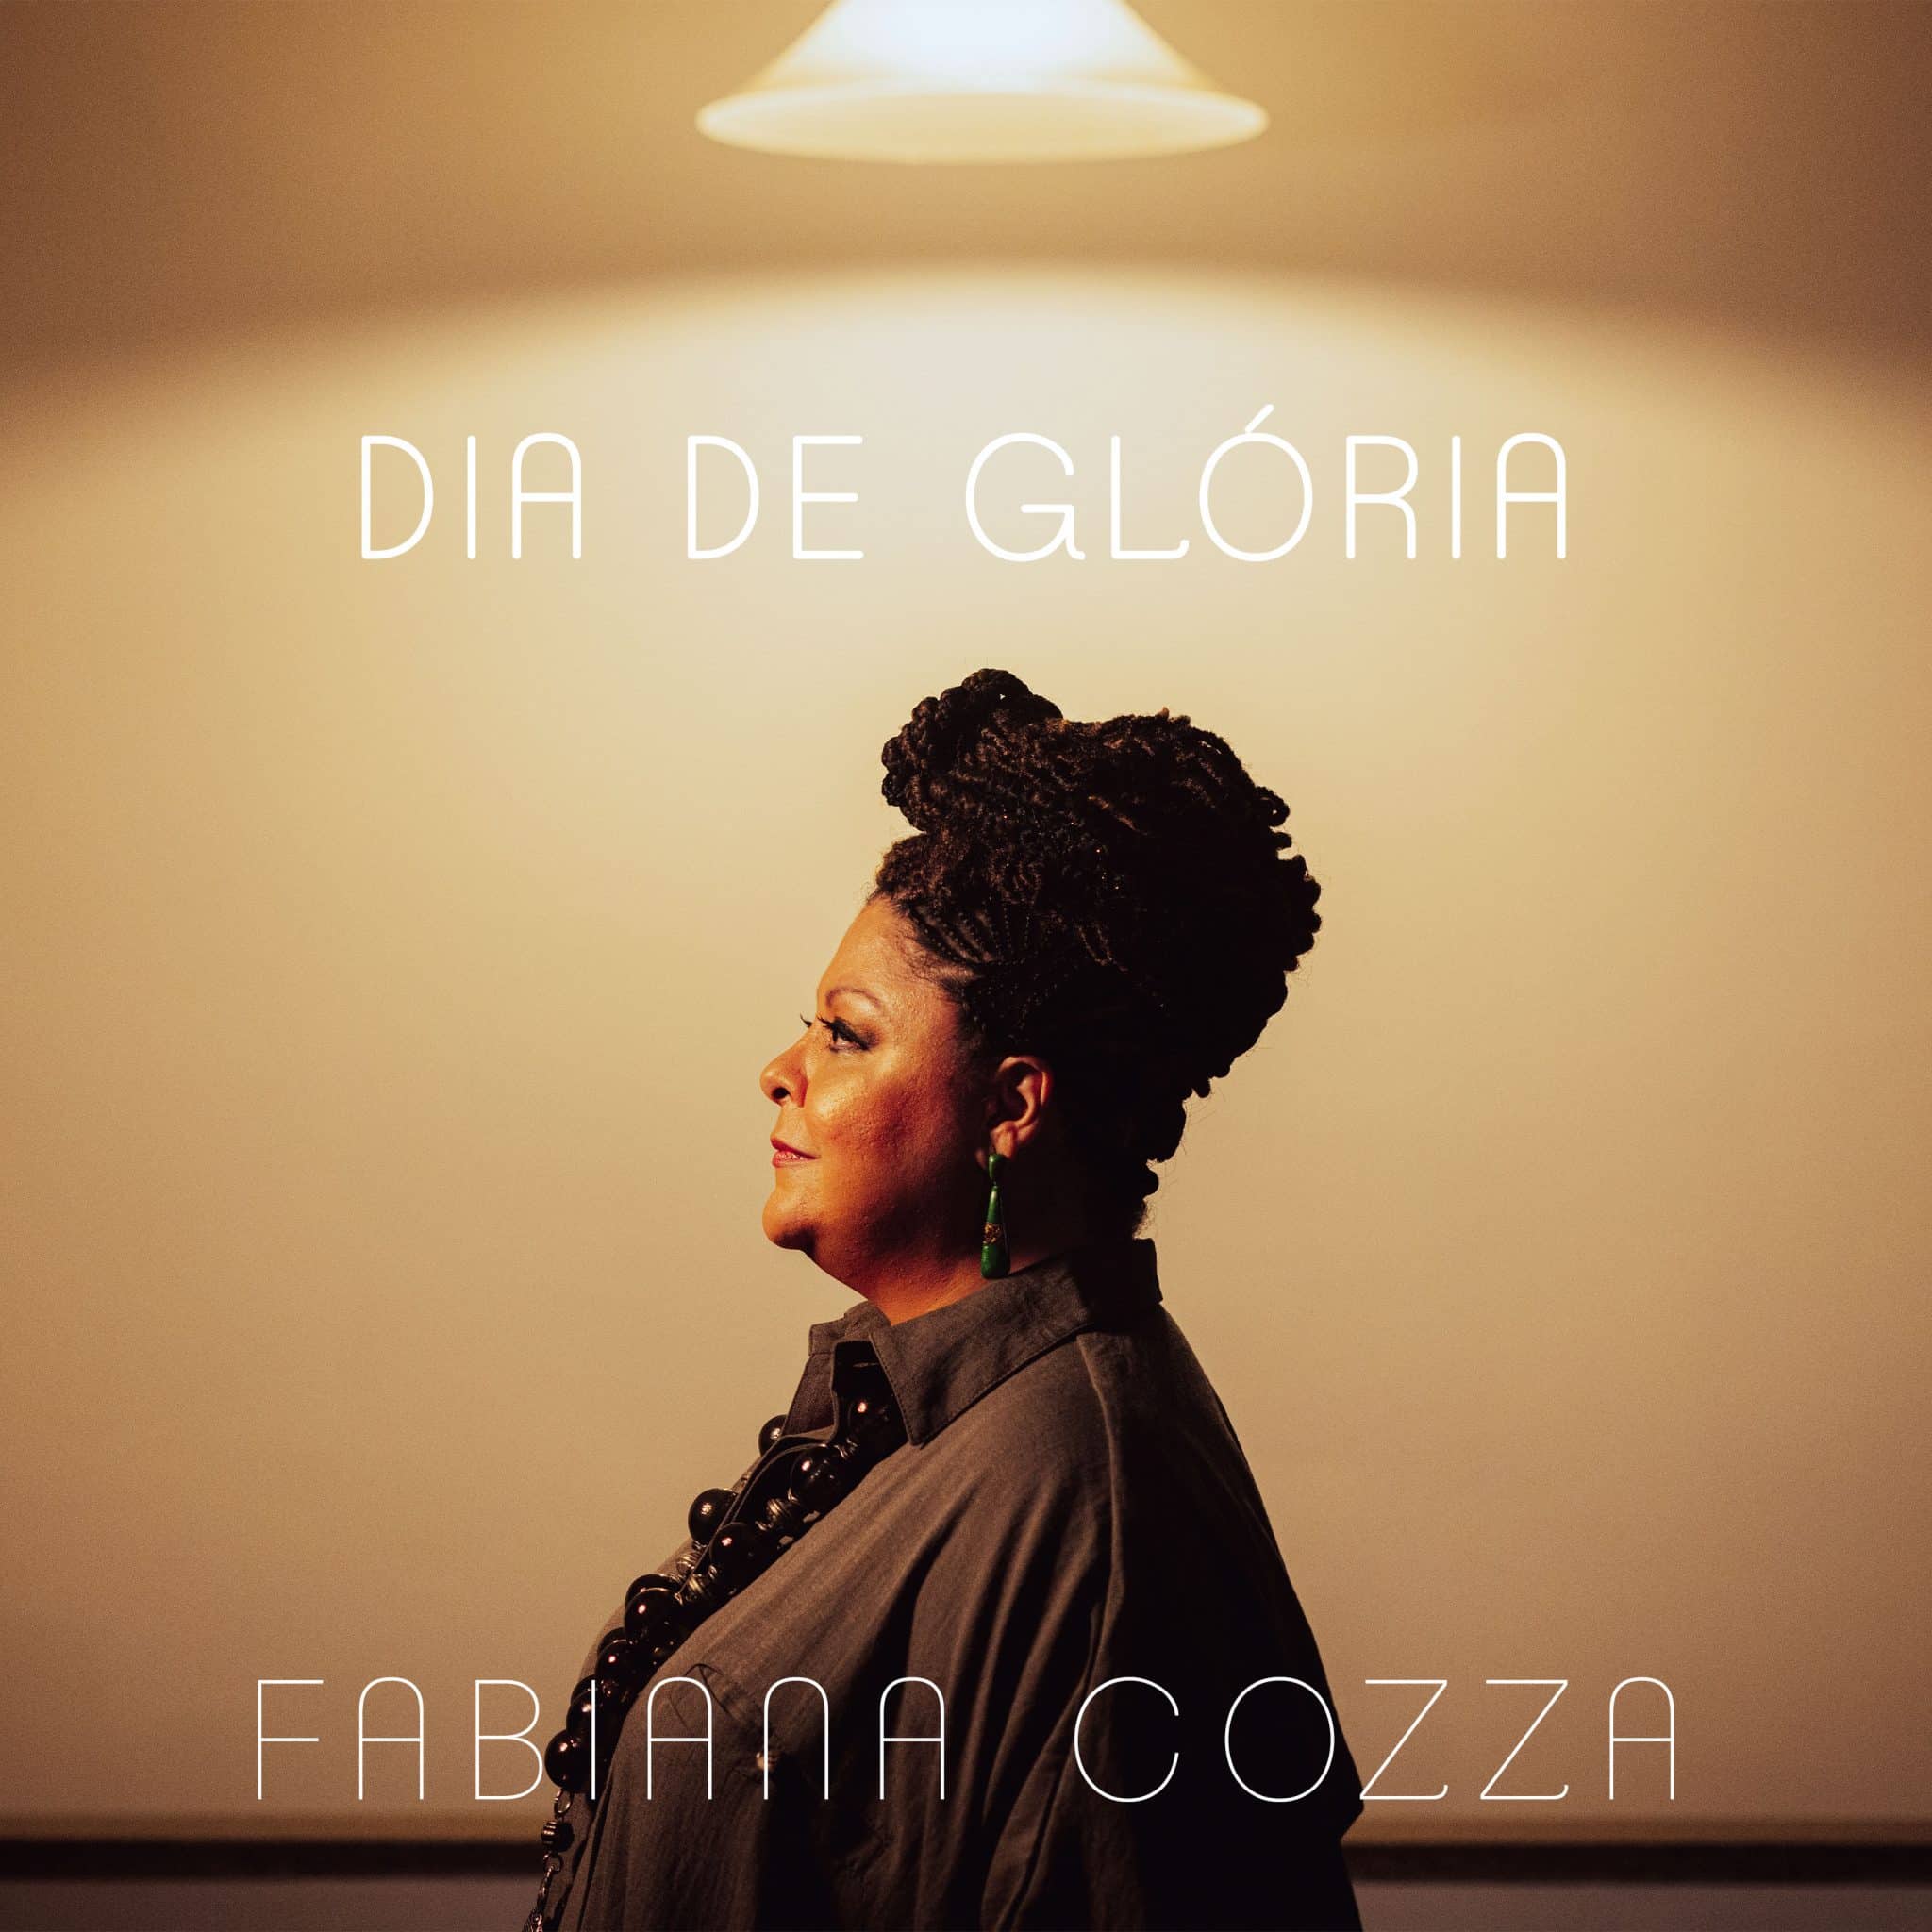 revistaprosaversoearte.com - Fabiana Cozza lança 'Dia de Glória', single do álbum dedicado a Nei Lopes